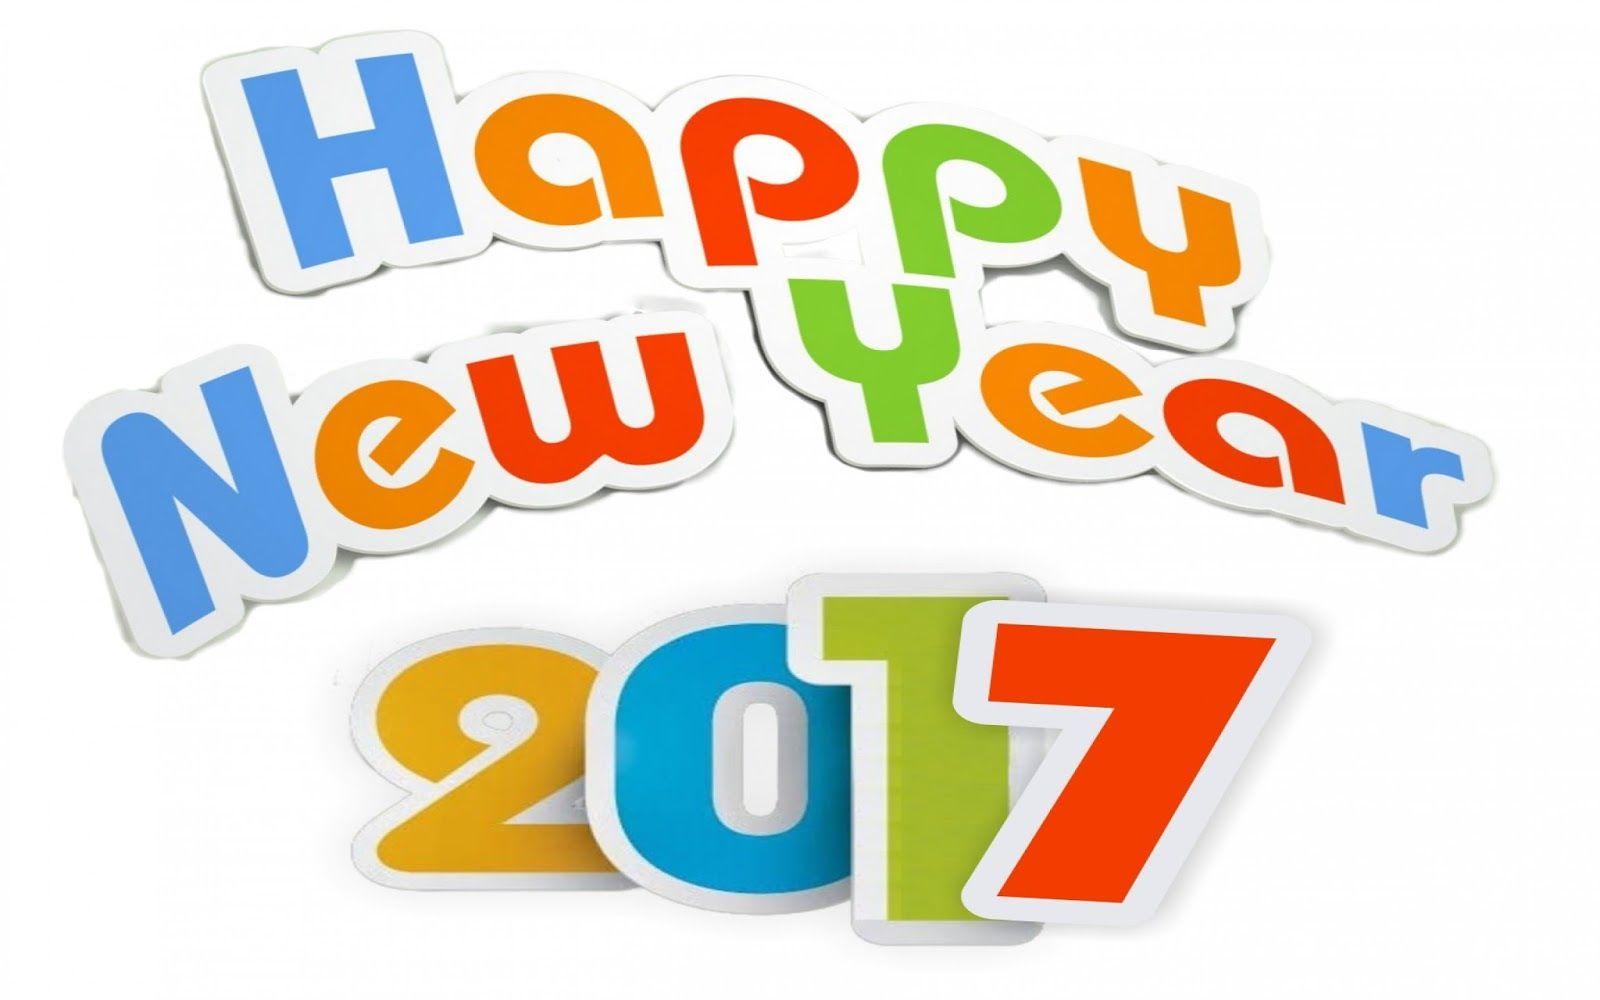 Happy New Year 2017. Happy New Year 2017 Image. Happy New Year